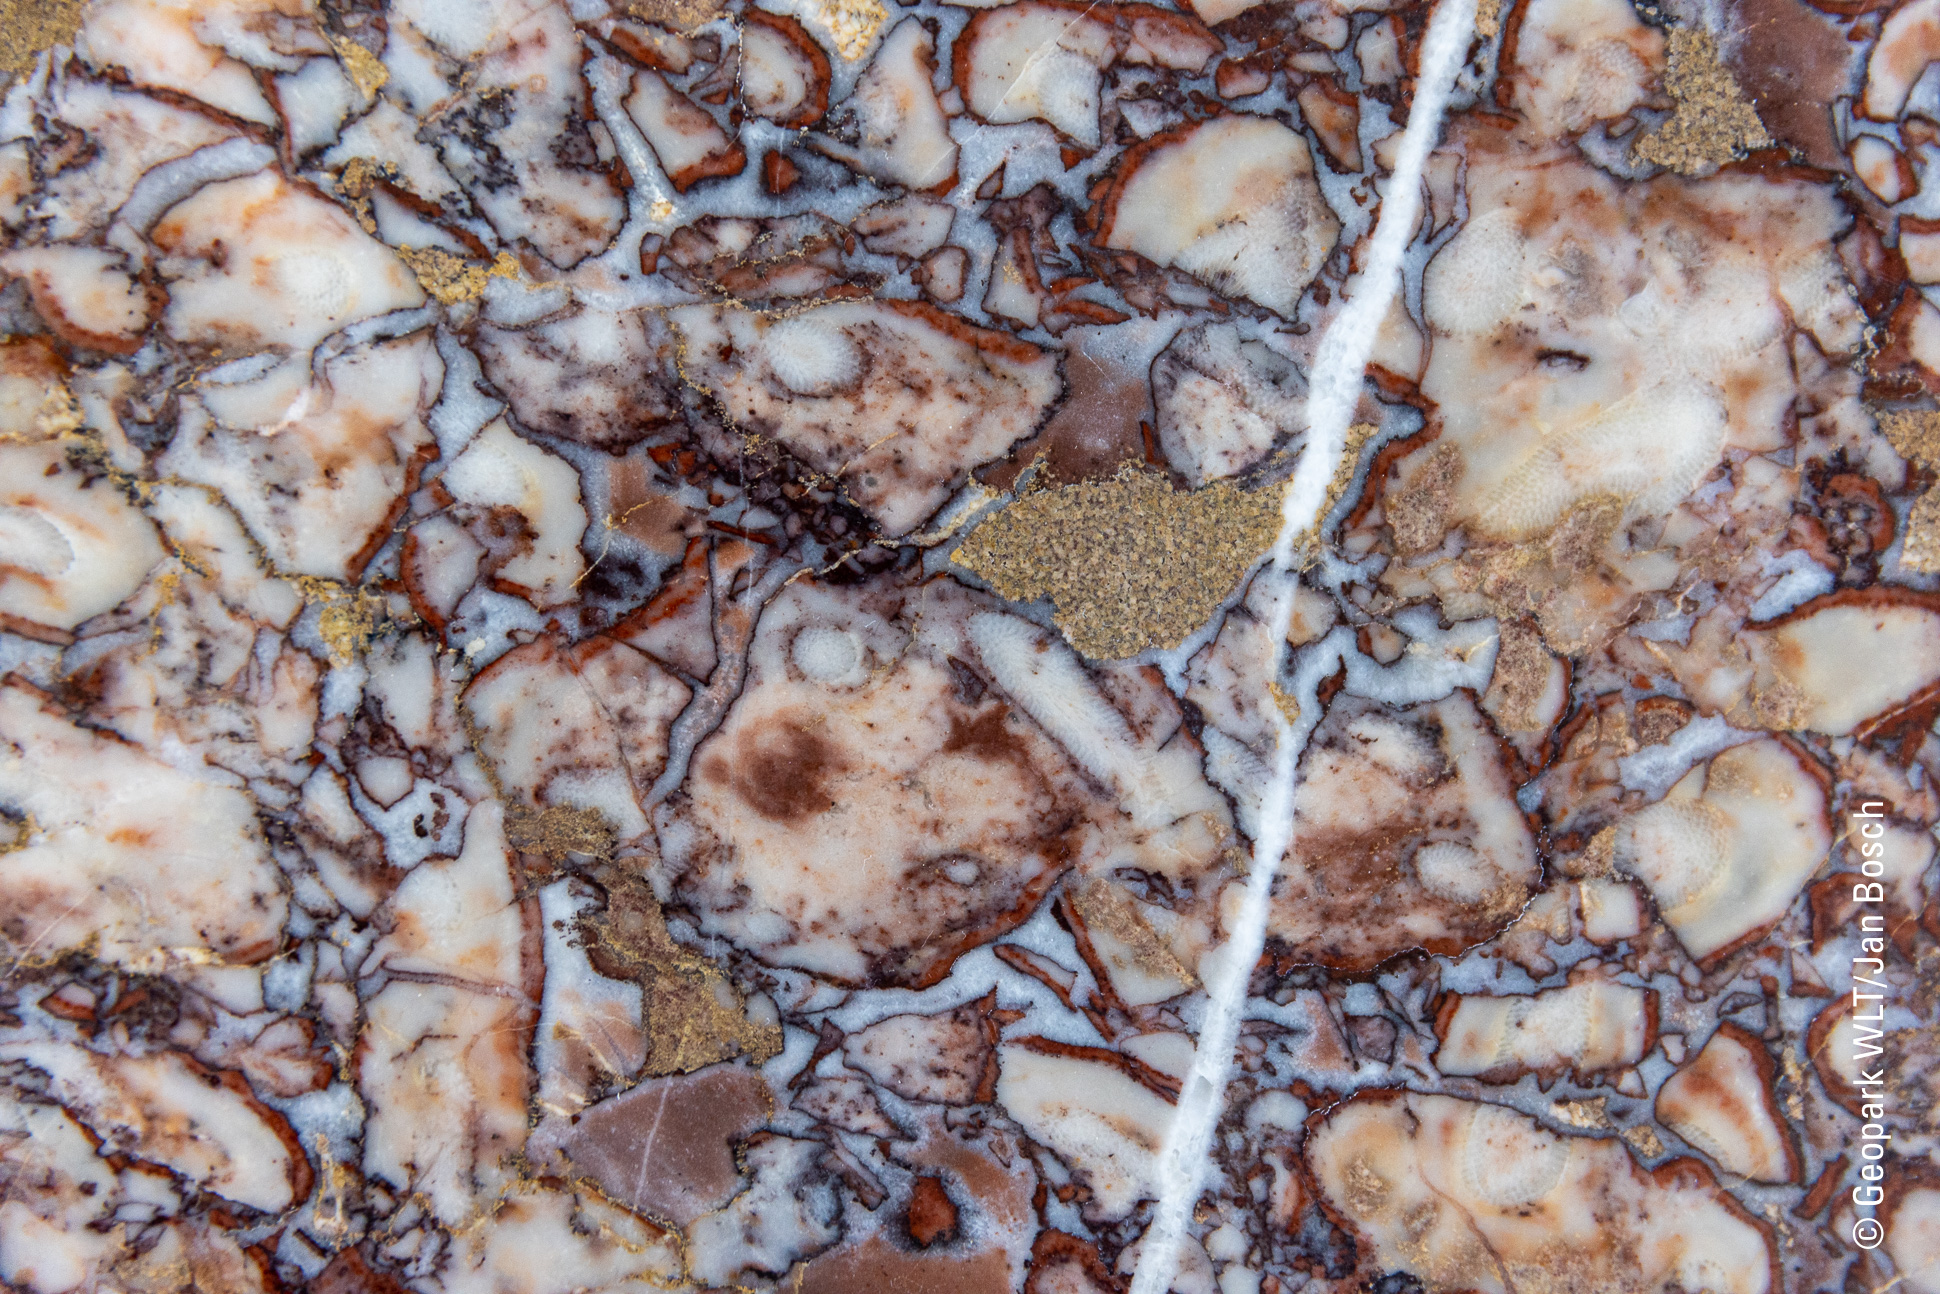 Rot-weißer Lahnmarmor aus dem Steinbruch Schupbach. Das GeoInformationszentrum Lahn-Marmor-Museum informiert den Lahnmarmor, eines wegen seiner reichen Farbigkeit hochgeschätzten polierfähigen Kalksteins. © Jan Bosch